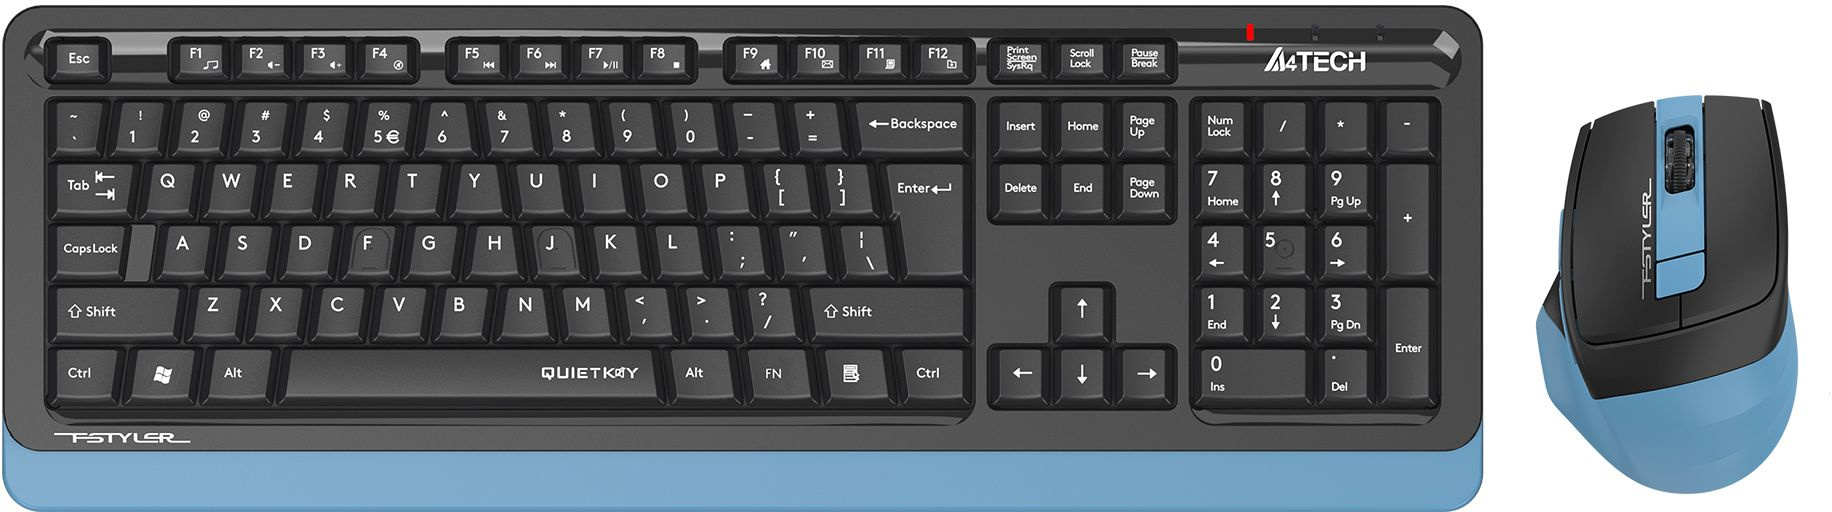 Клавиатура + мышь A4Tech Fstyler FGS1035Q, беспроводная, USB, черный/синий (FGS1035Q NAVY BLUE)